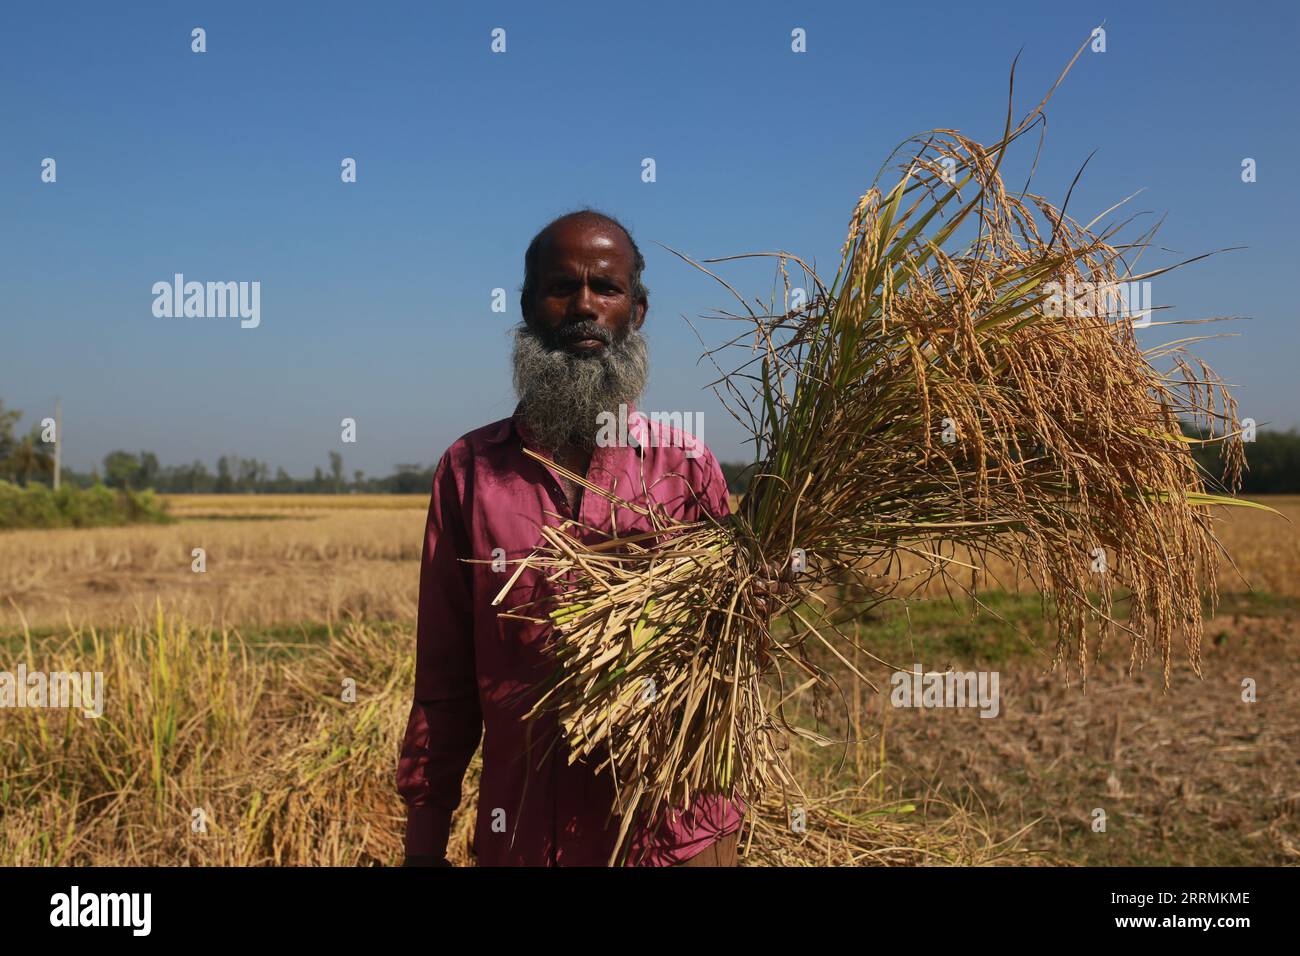 SHERPUR, BANGLADESH- 1 DÉCEMBRE 2021 : un agriculteur pose alors qu'il tient du paddy pendant la récolte à Sherpur, Bangladesh, le 1 décembre 2021. Banque D'Images